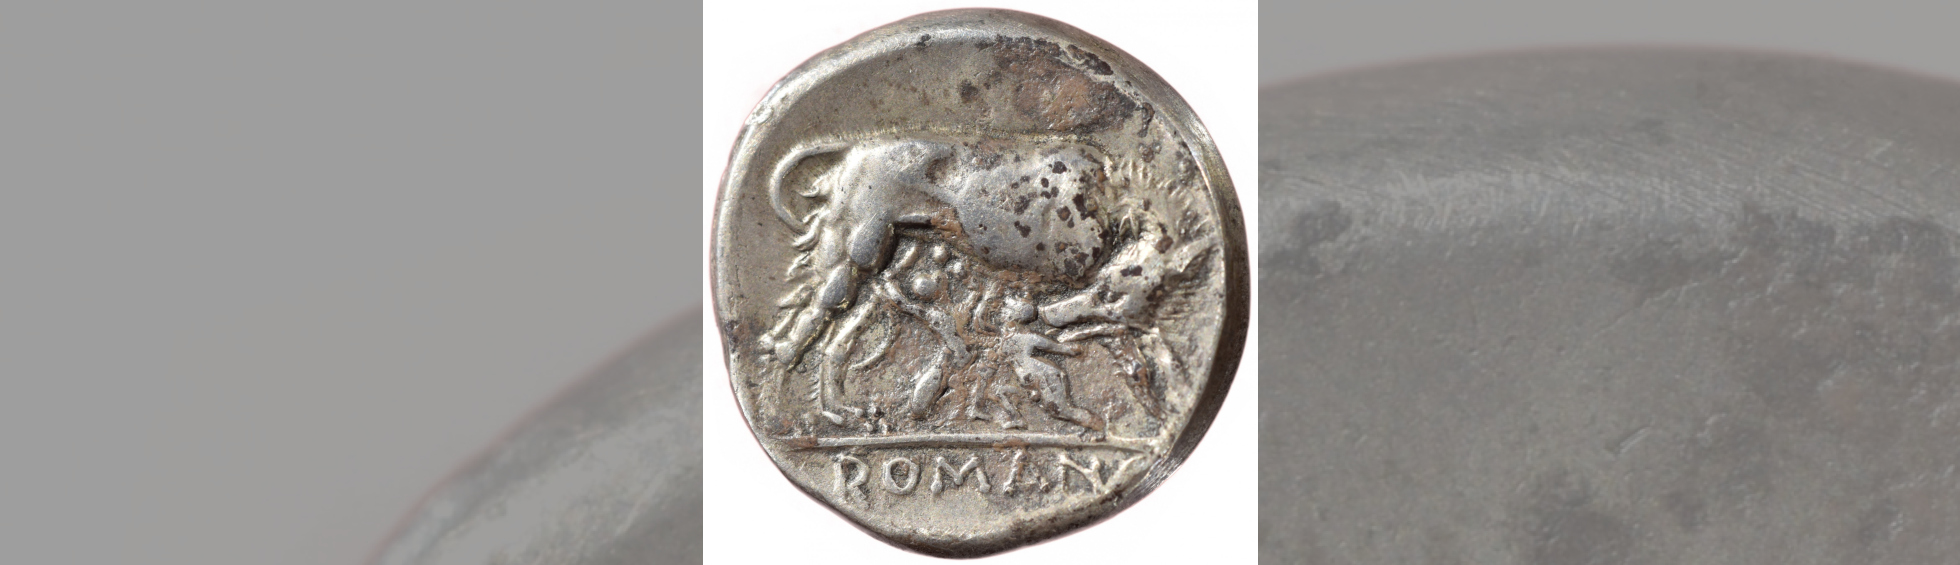 photo couleur d'une pièce de monnaie romaine - didrachmes revers